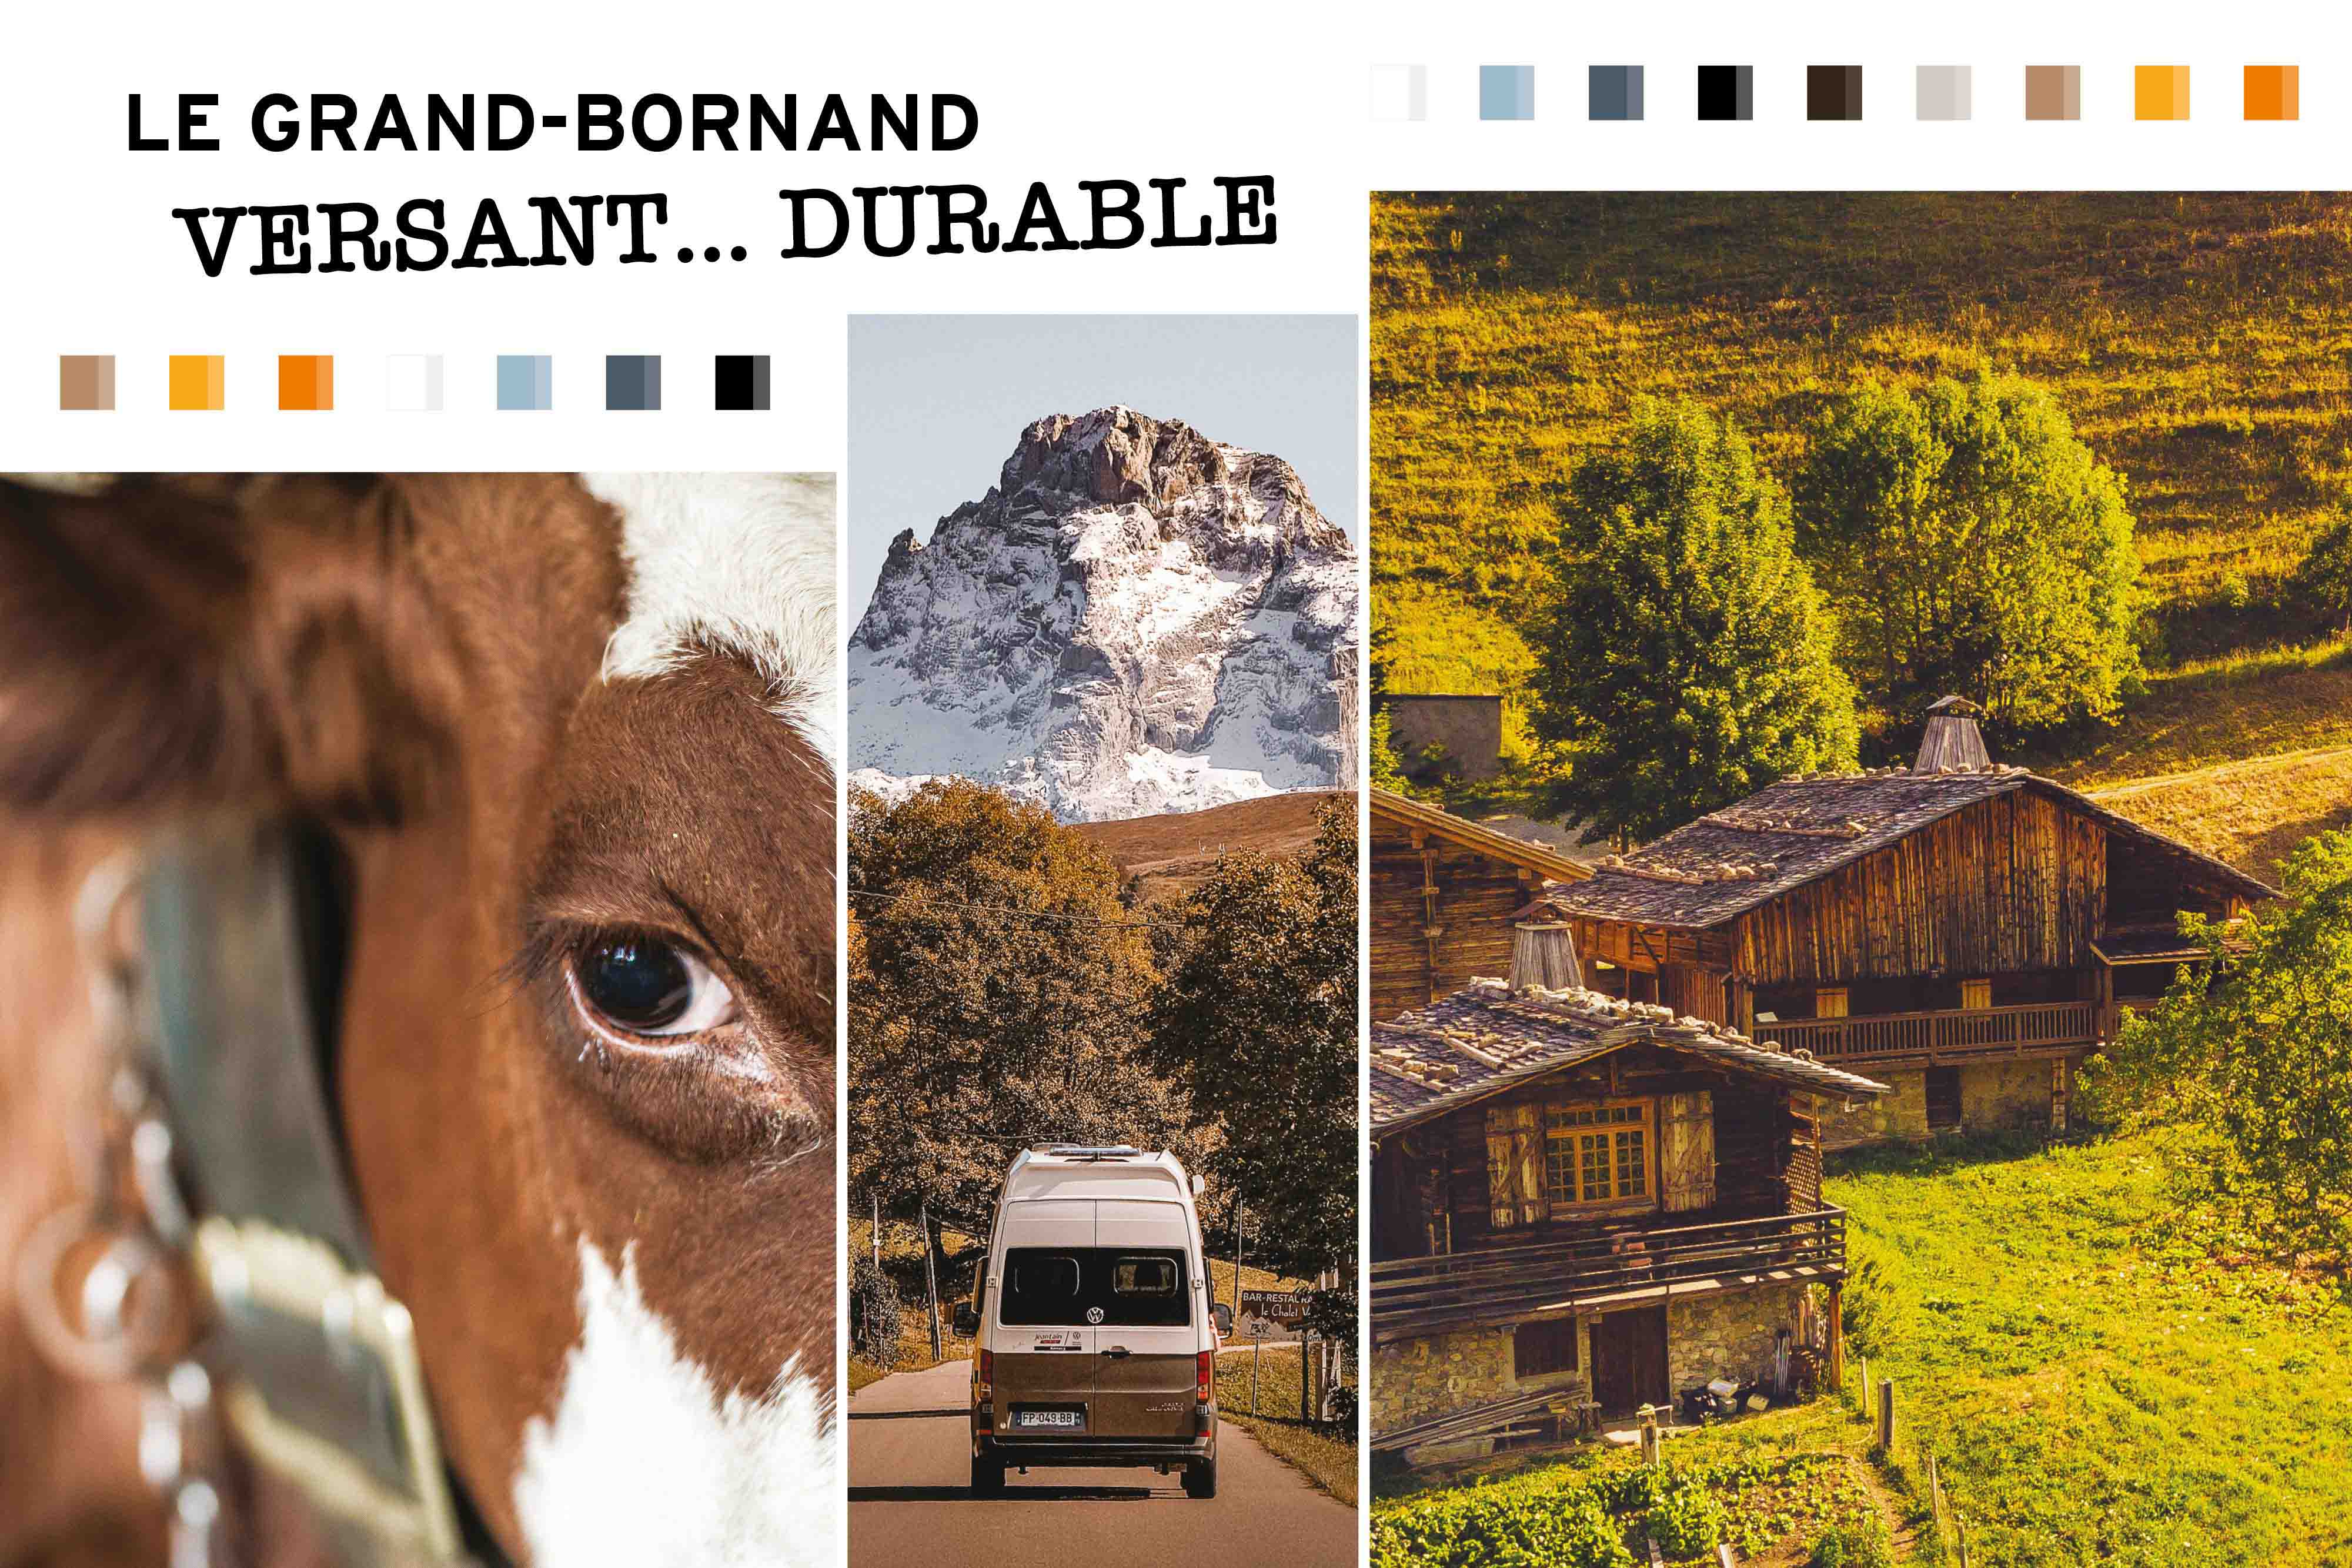 Le Grand-Bornand Versant Durable - © Le Grand-Bornand Tourisme